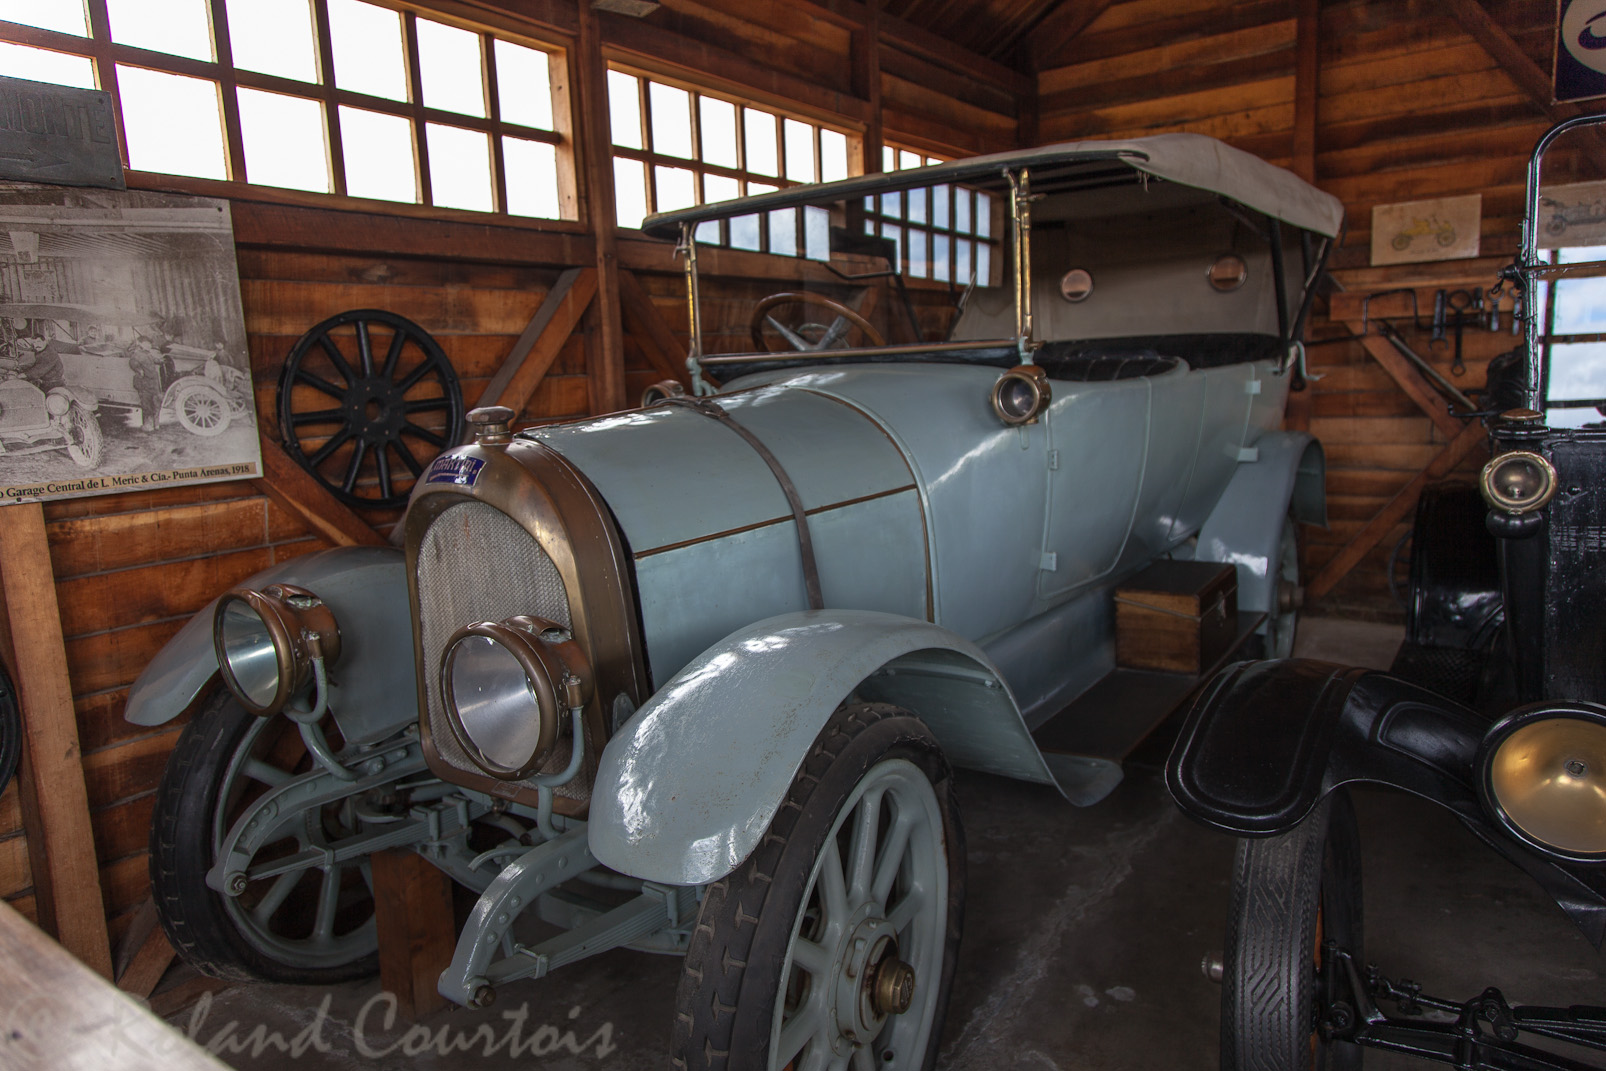 Dans le musée del Recuerdo, quelque voitures anciennes.